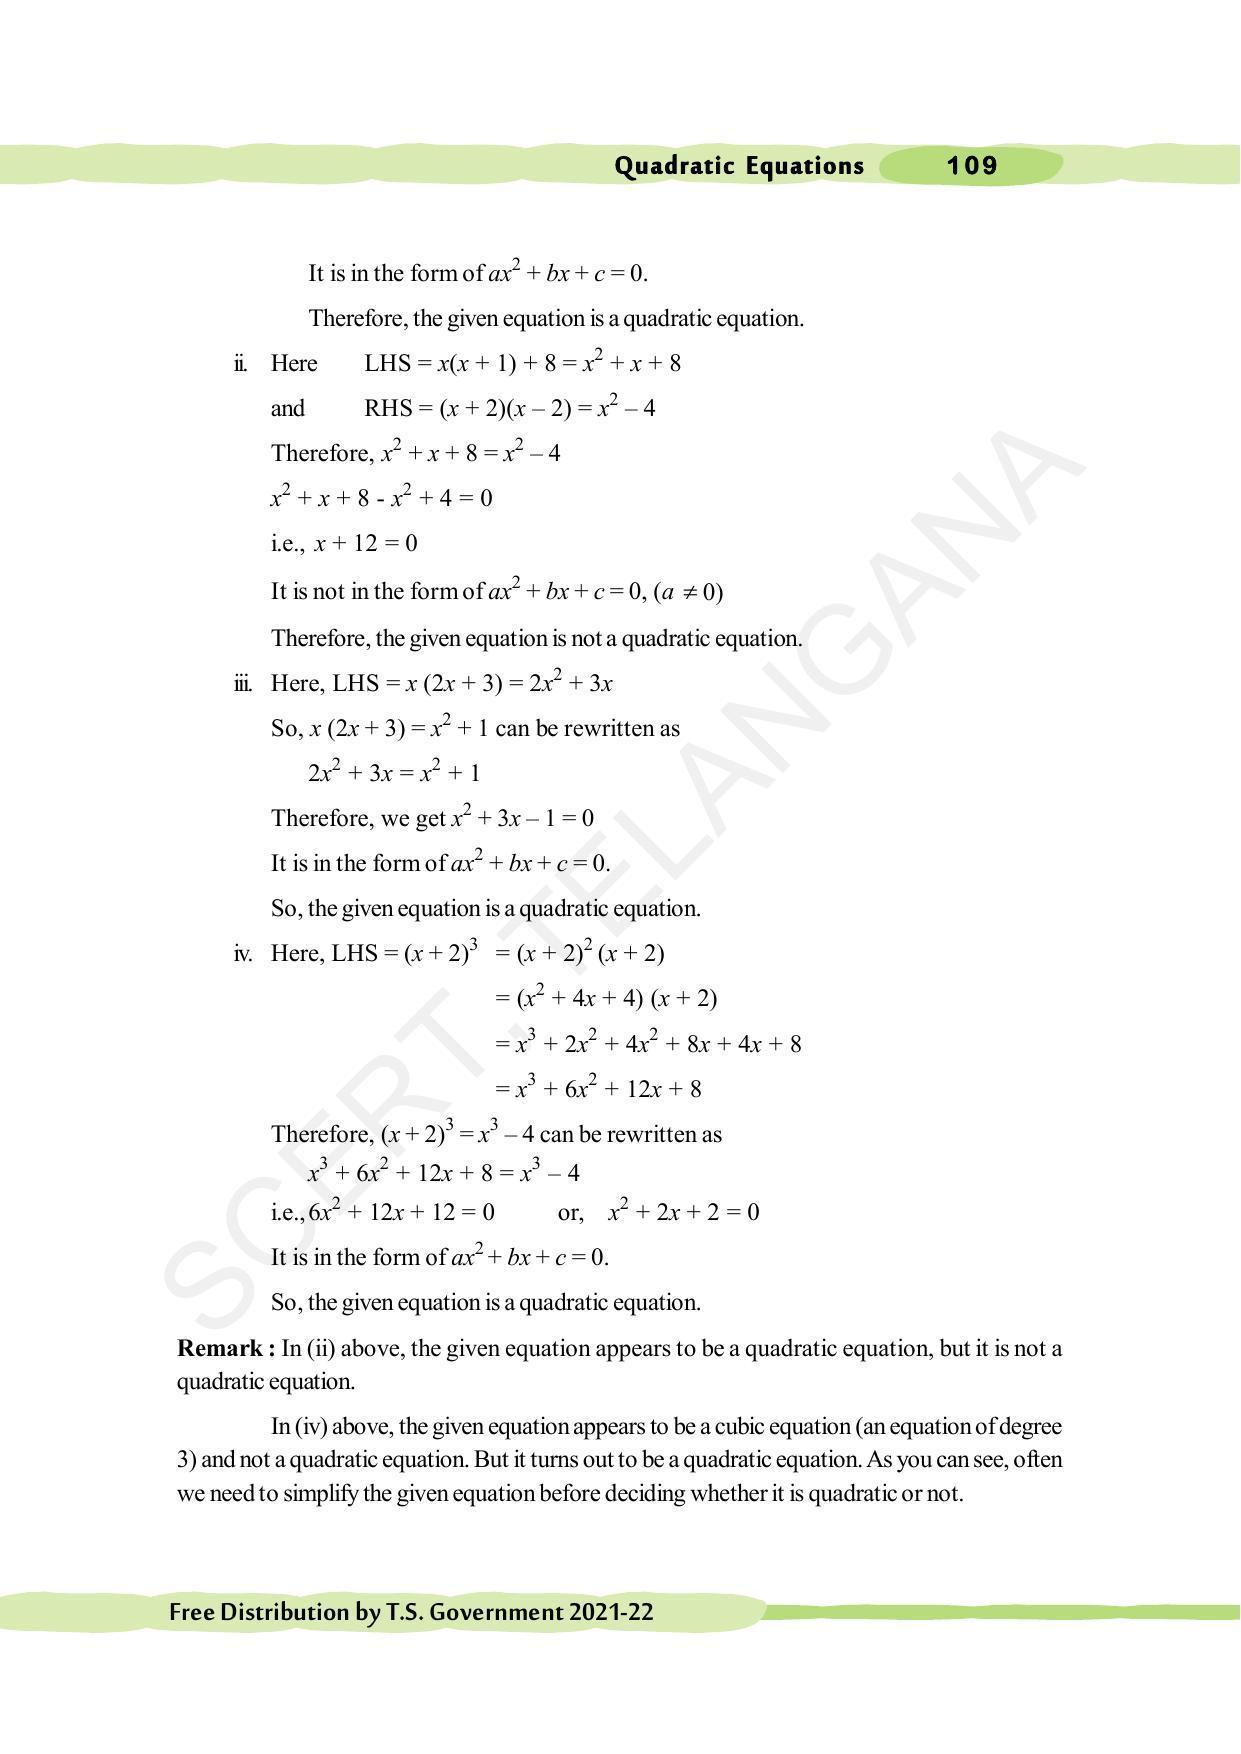 TS SCERT Class 10 Maths (English Medium) Text Book - Page 119